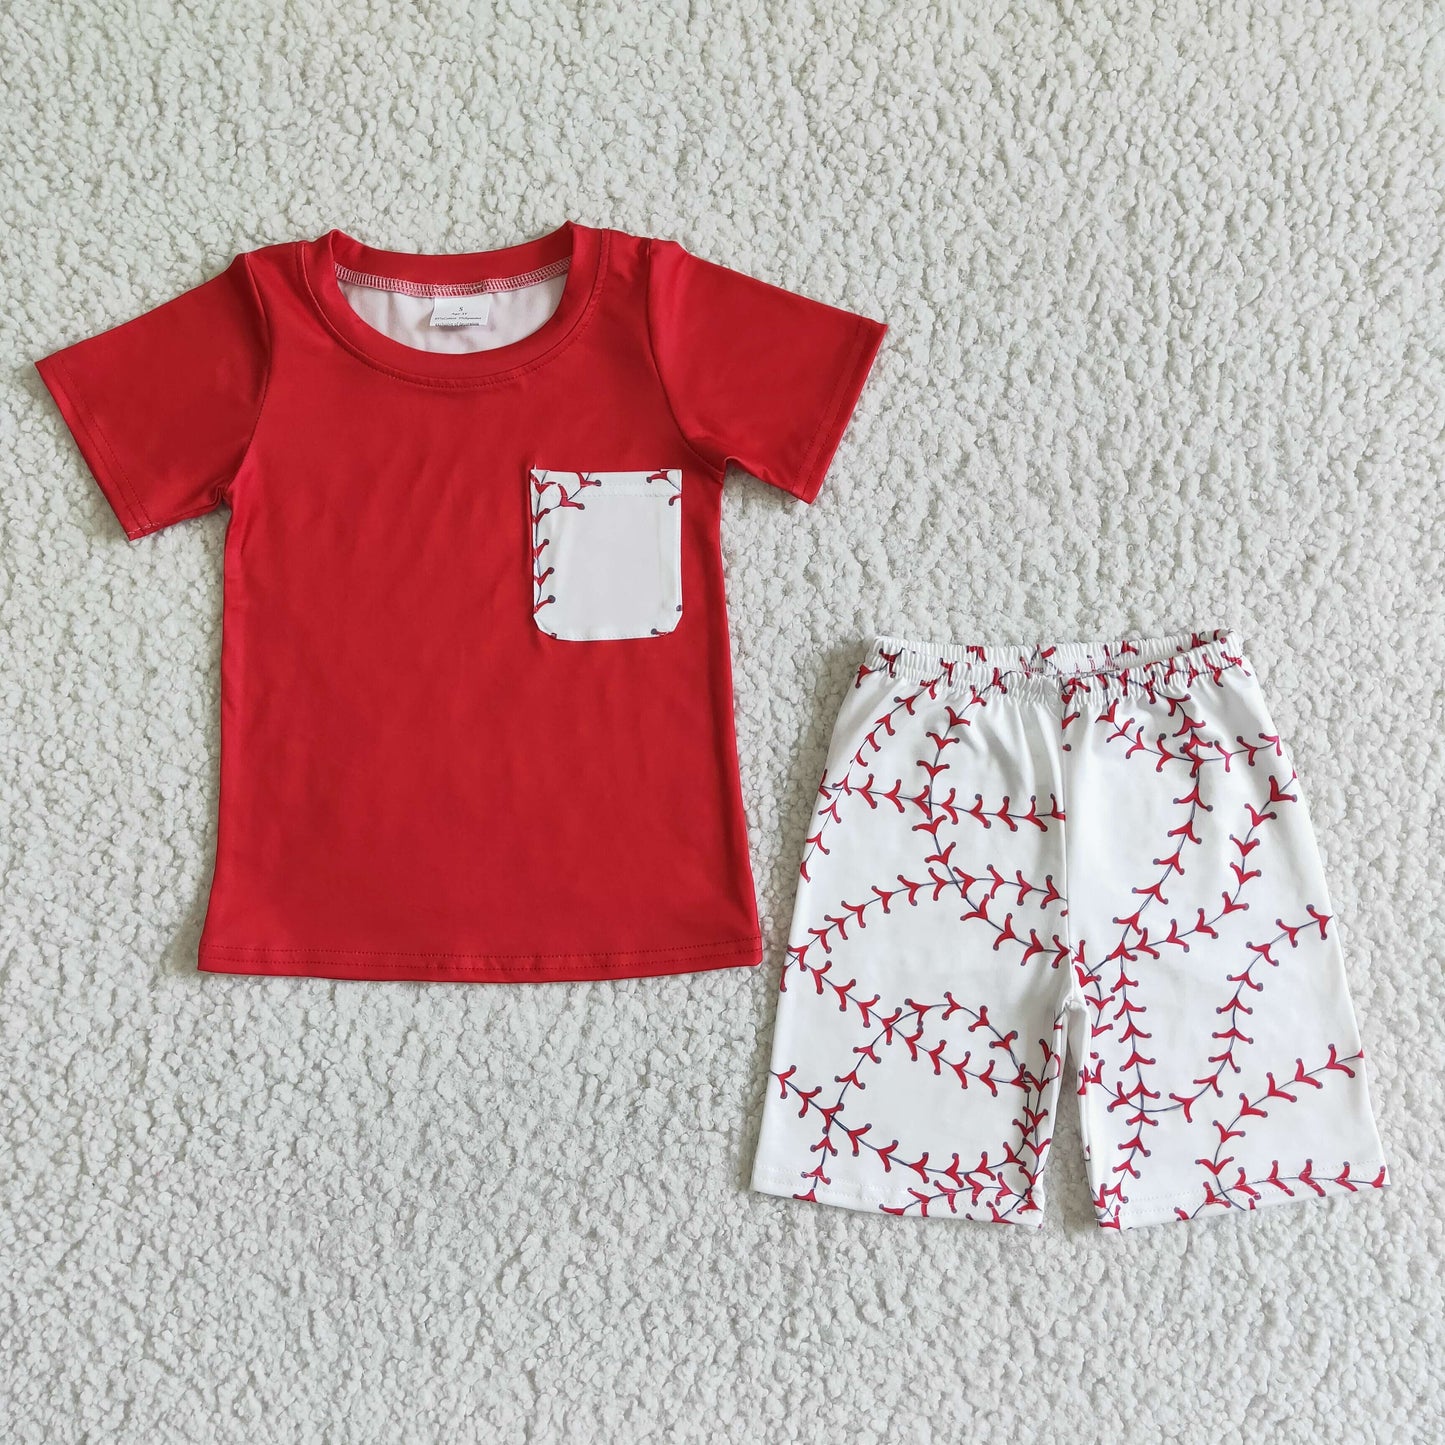 Red pocket shirt baby boy baseball clothes